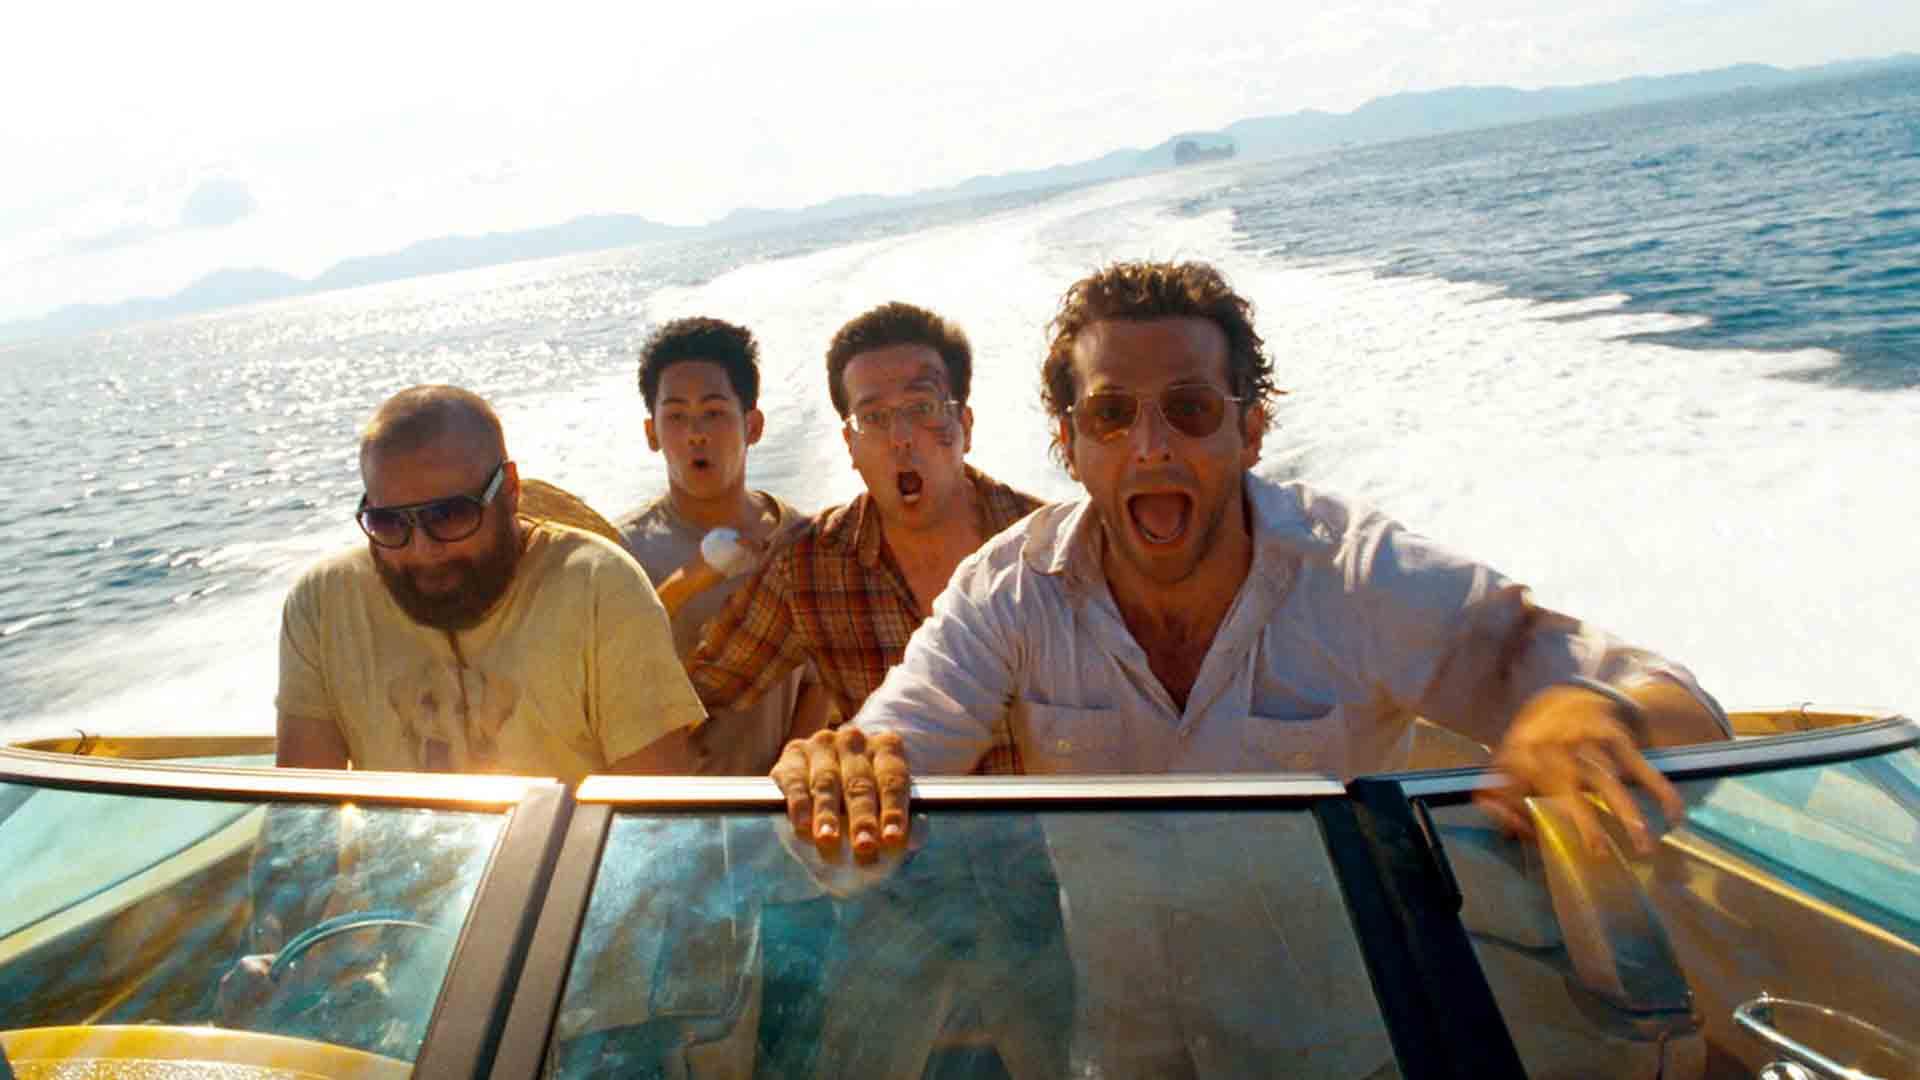 بردلی کوپر در حال داد زدن در یک قایق تفریحی در فیلم The Hangover Part II